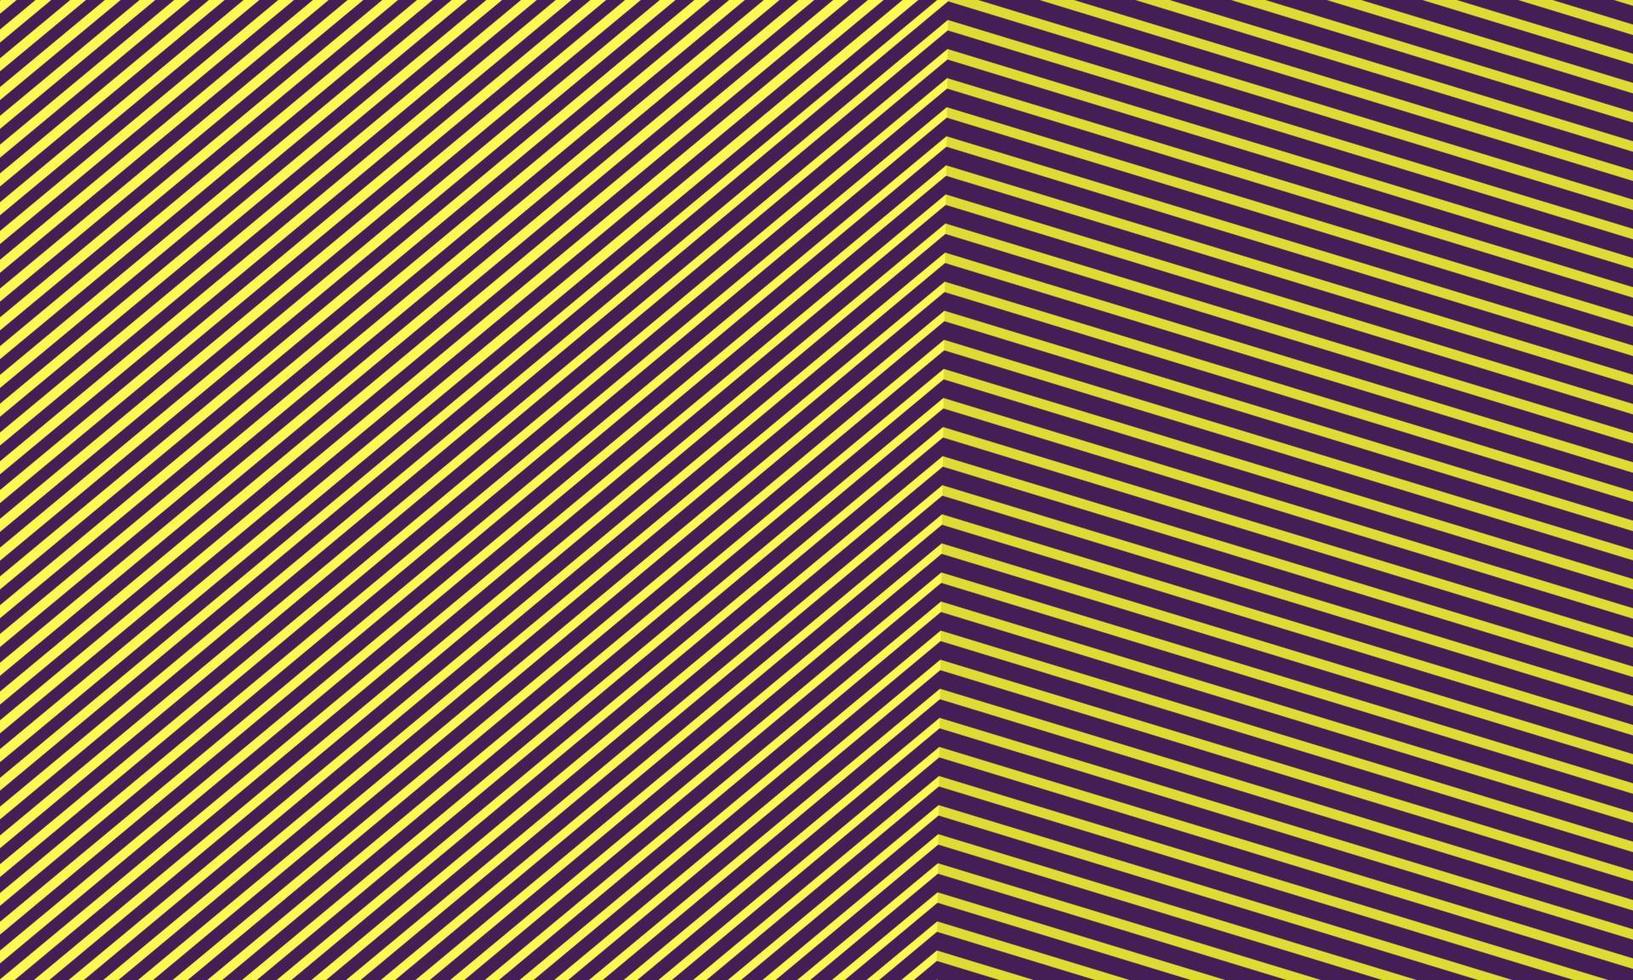 abstrakte nahaufnahme geometrische perspektive baukasten ecke aus linien formen muster mit modernem gelb-violettem farbhintergrund, minimal lebendiges trendiges architekturkonzept. vektor